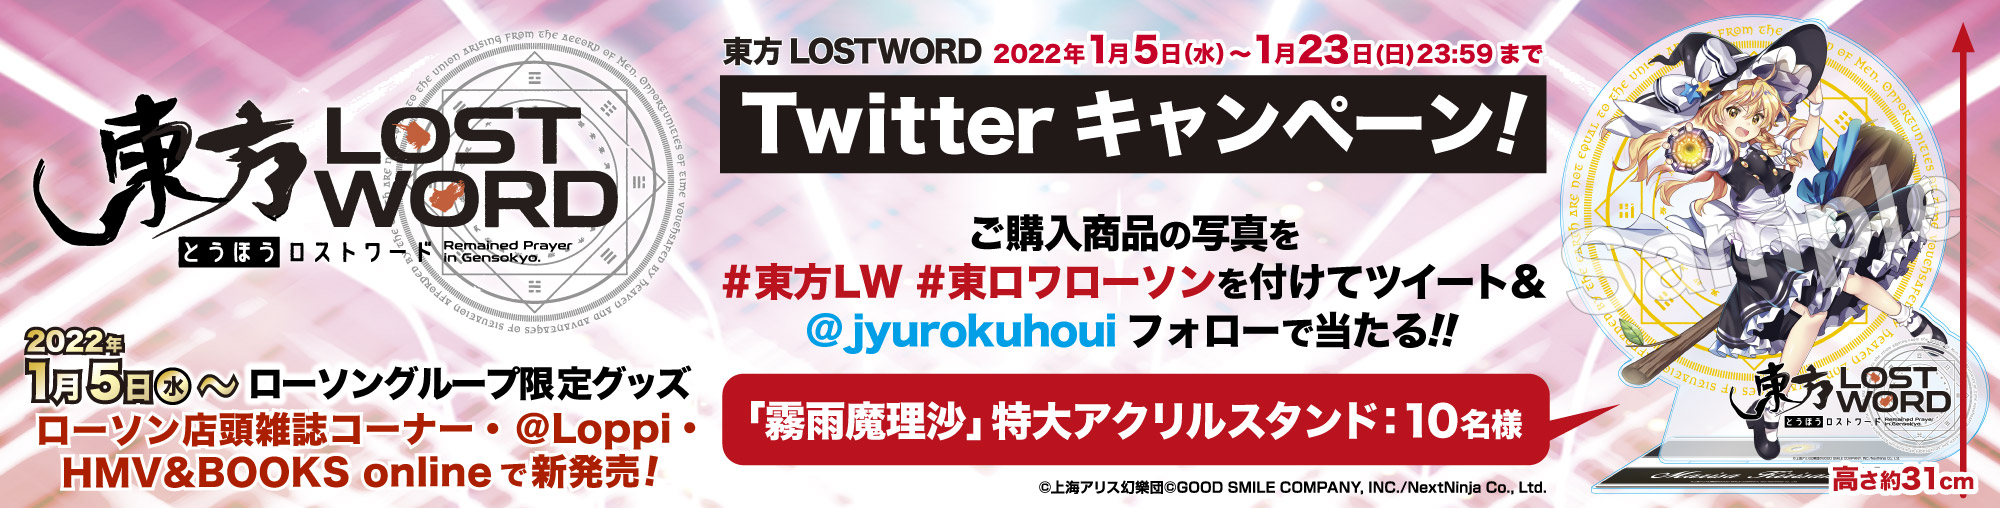 「東方LOSTWORD」ツイッターキャンペーン